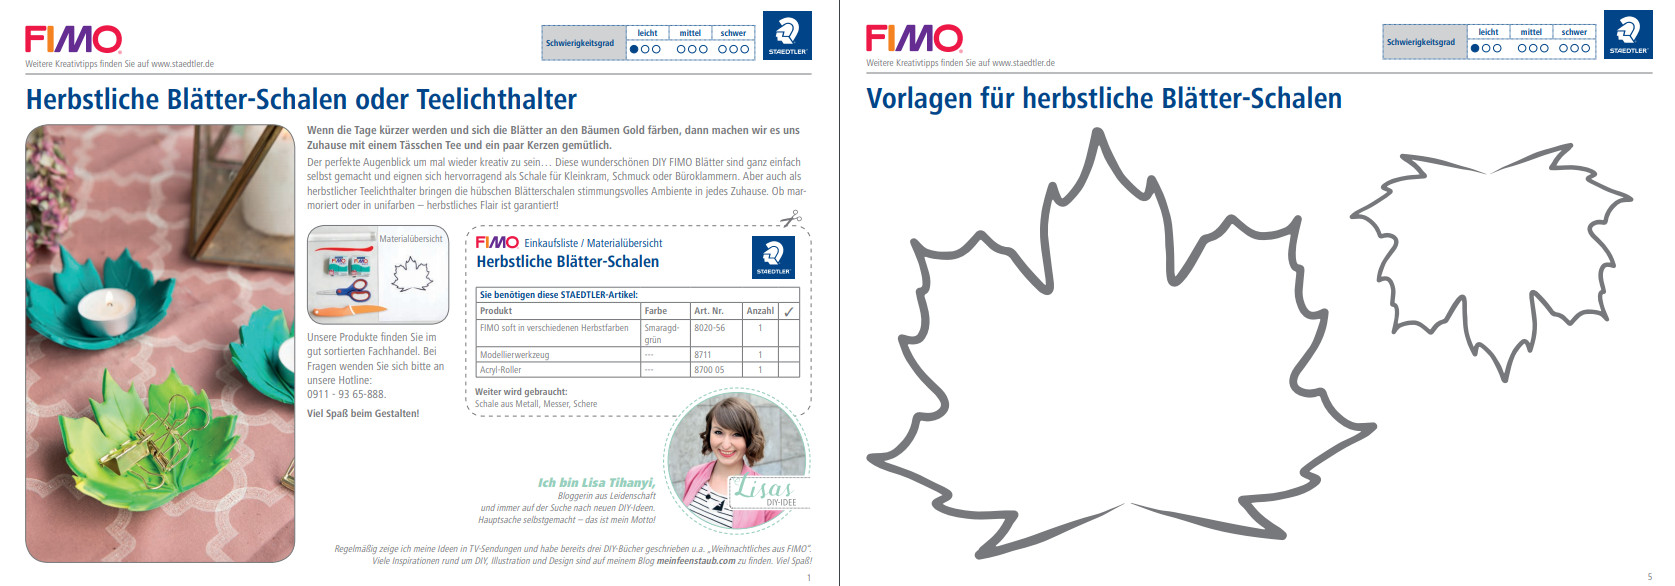 Vorlagen und komplette Anleitung im PDF-Format